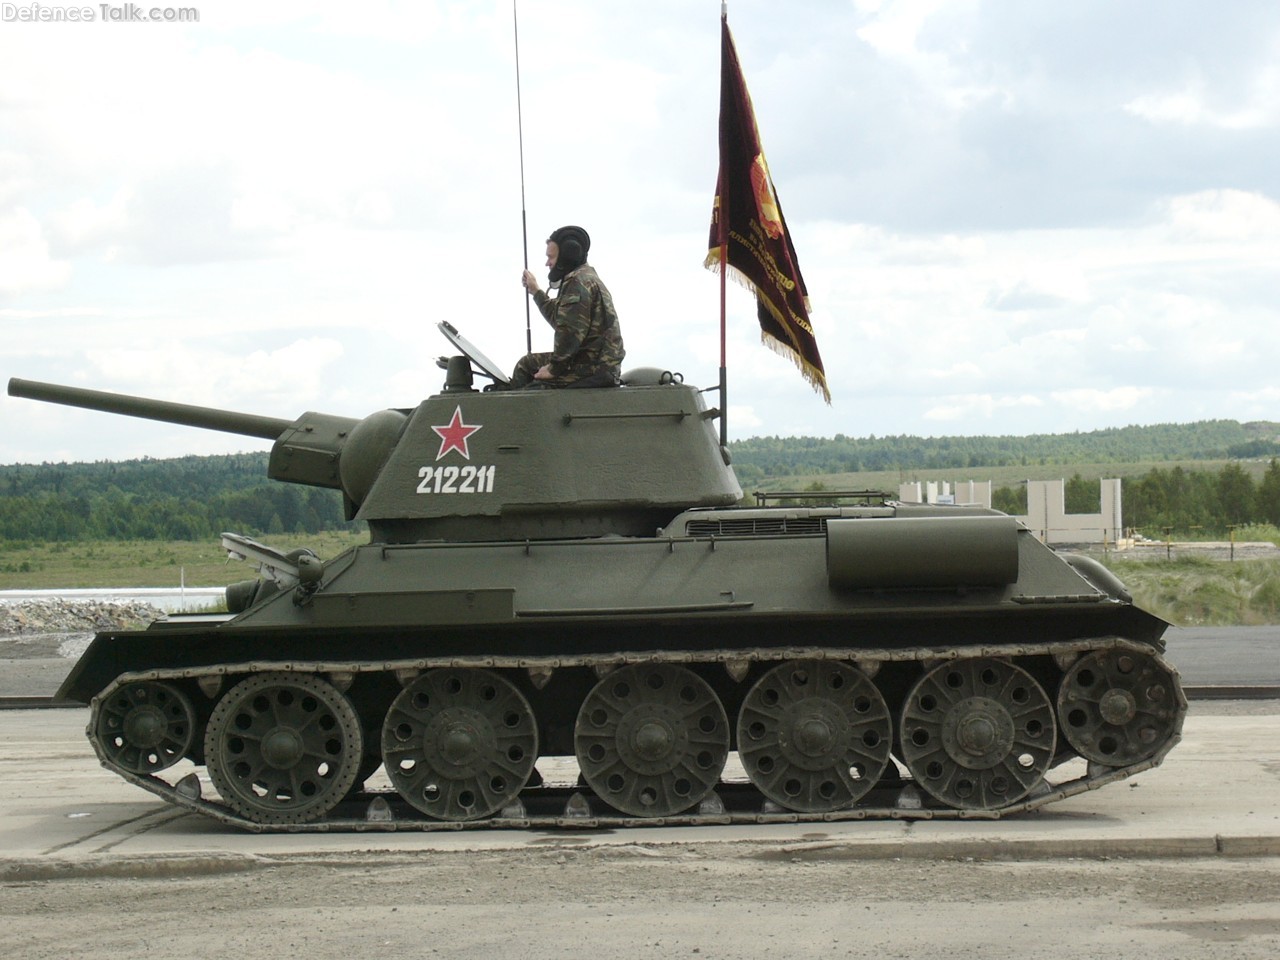 OT-34 Flamethrower Tank